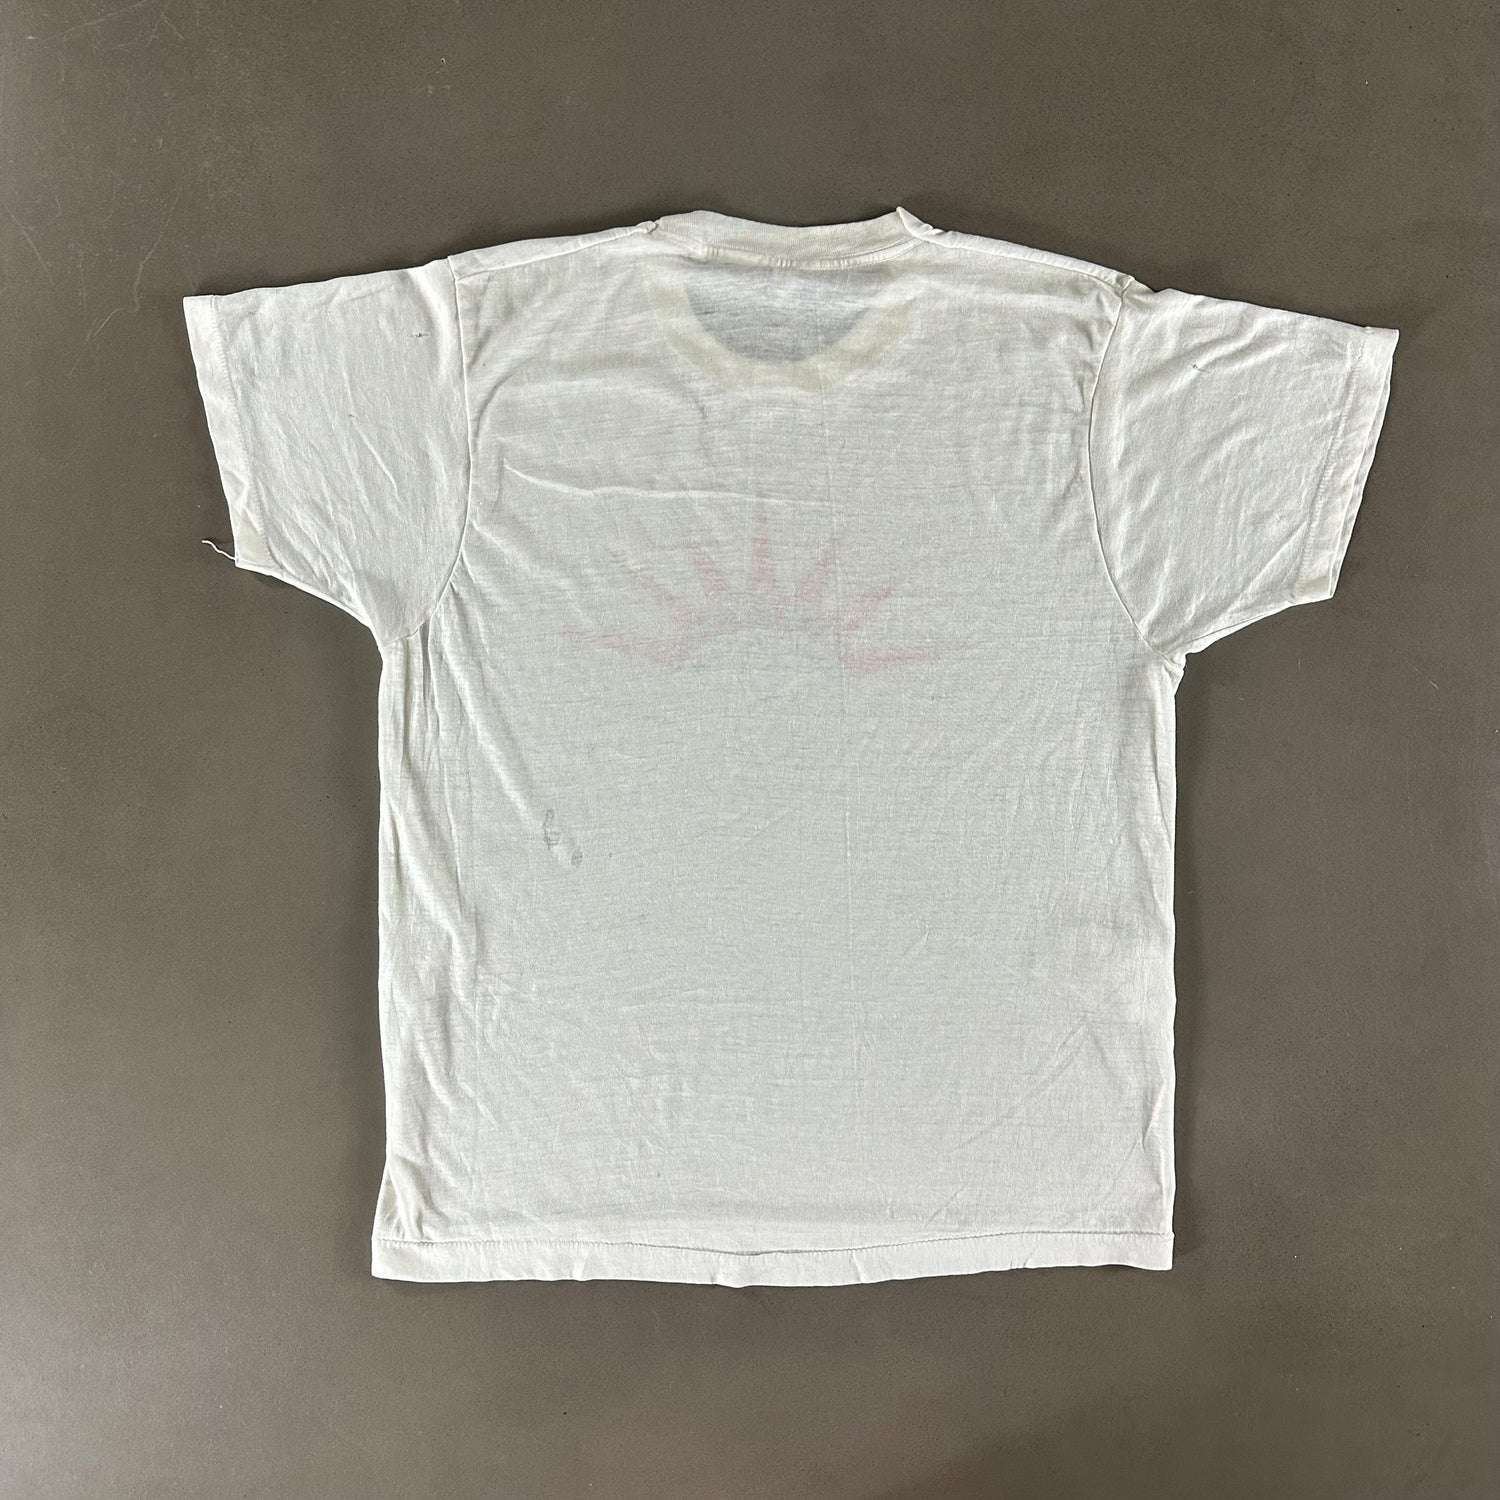 Vintage 1980s Revlon T-shirt size XL